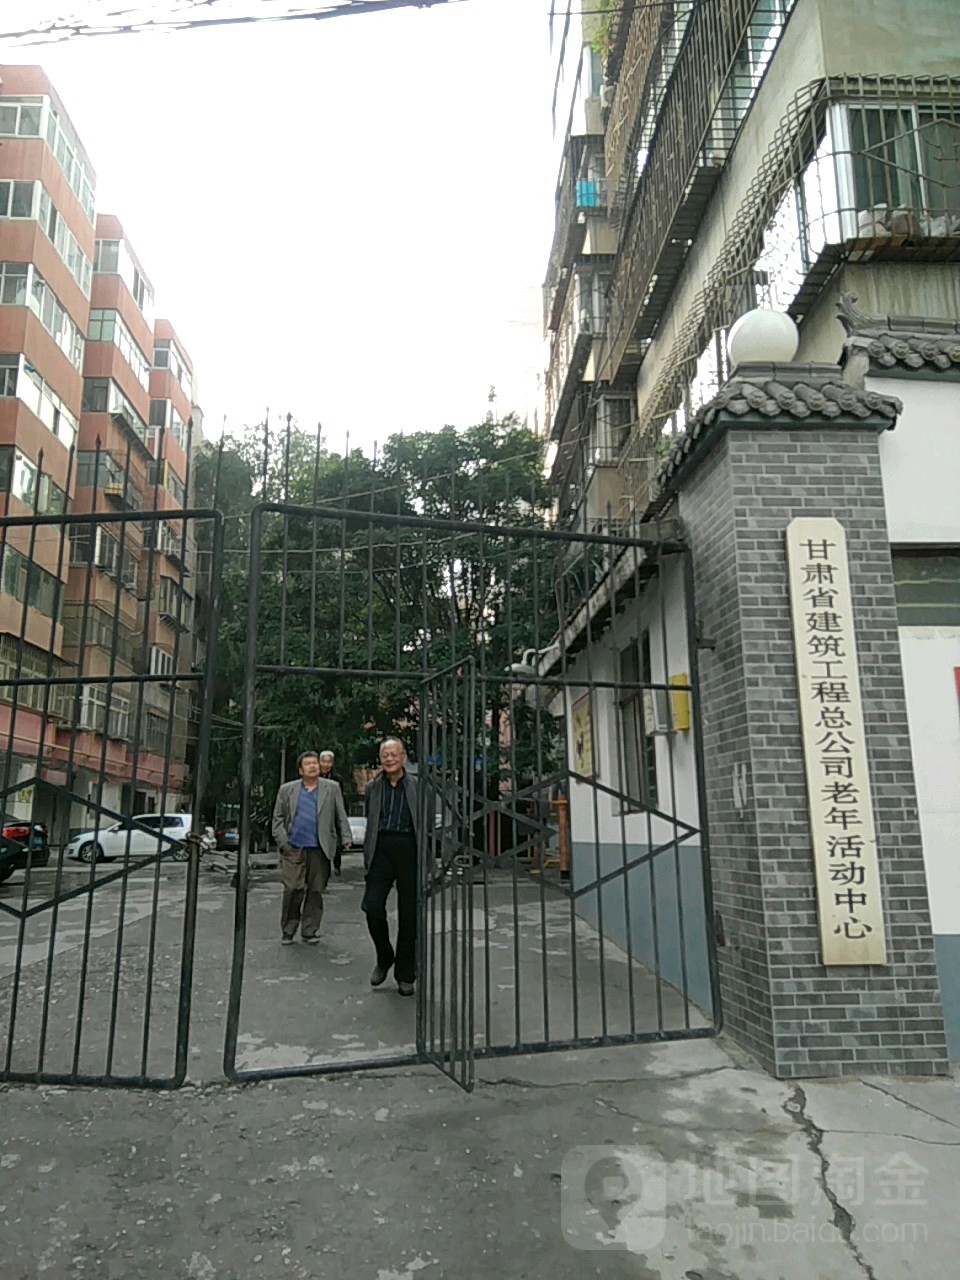 甘肃省建筑工程总公司老年活动中心